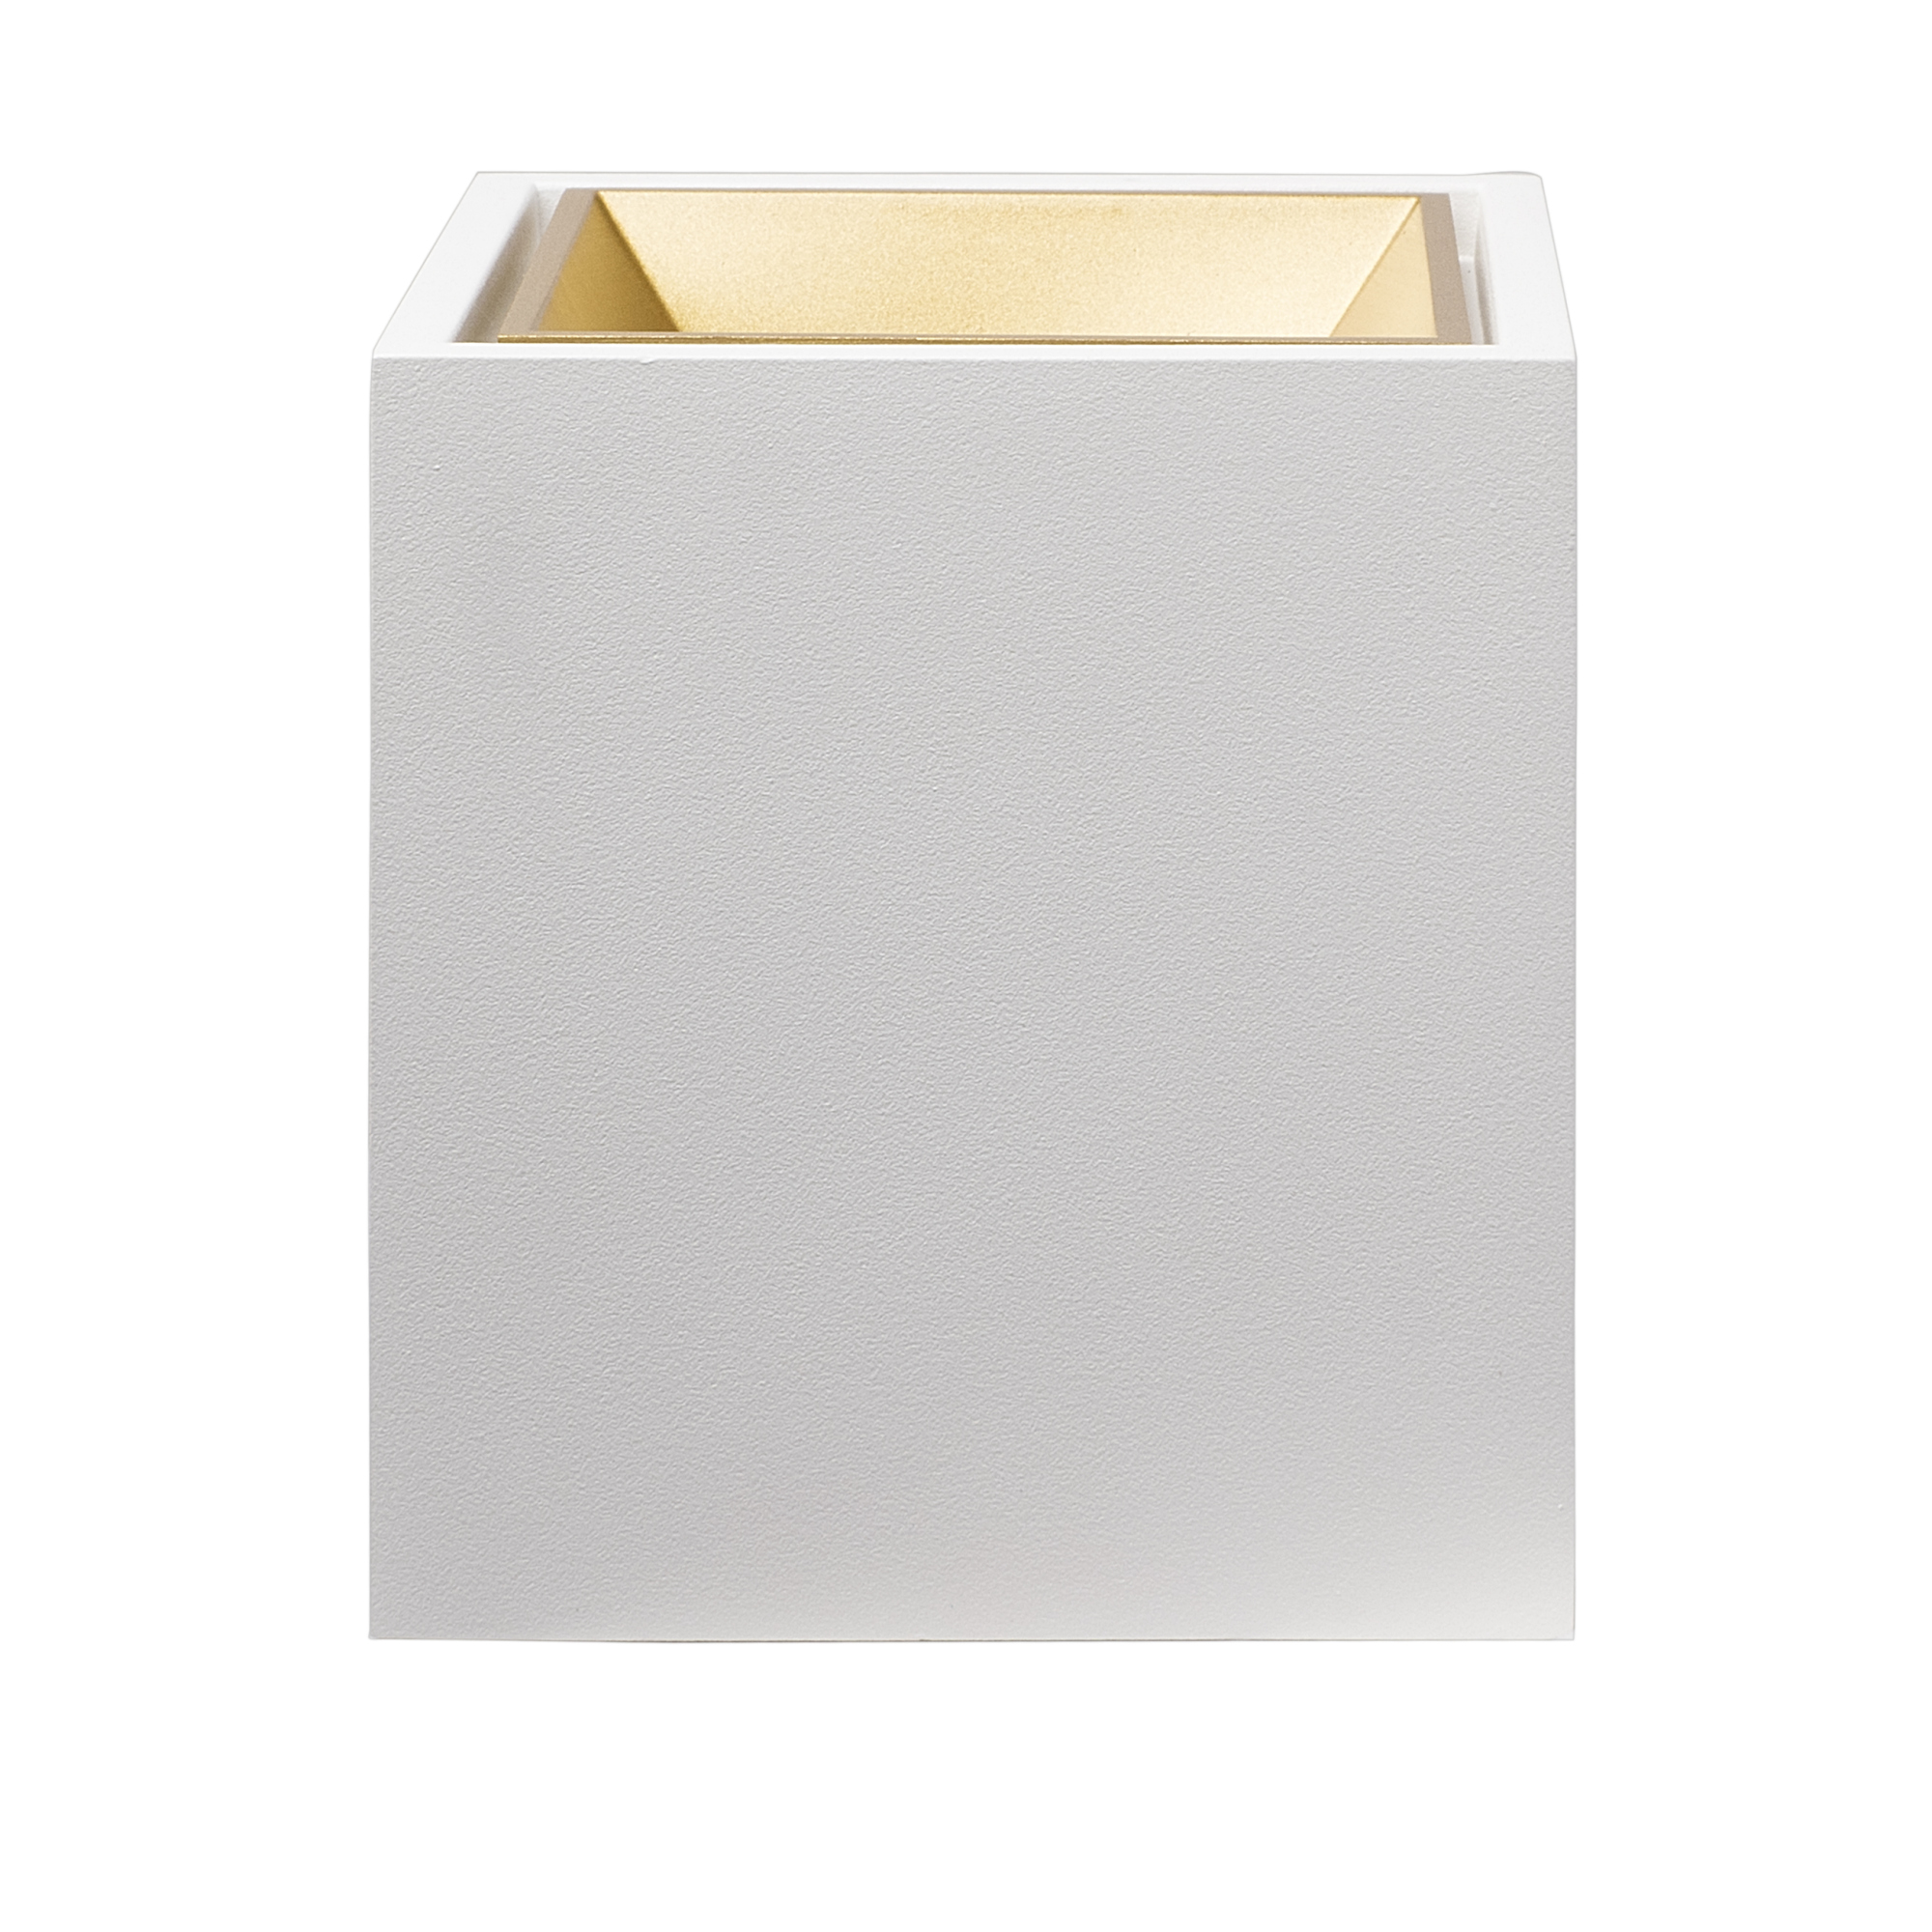 Накладной светодиодный светильник LeDron KUBING White Gold